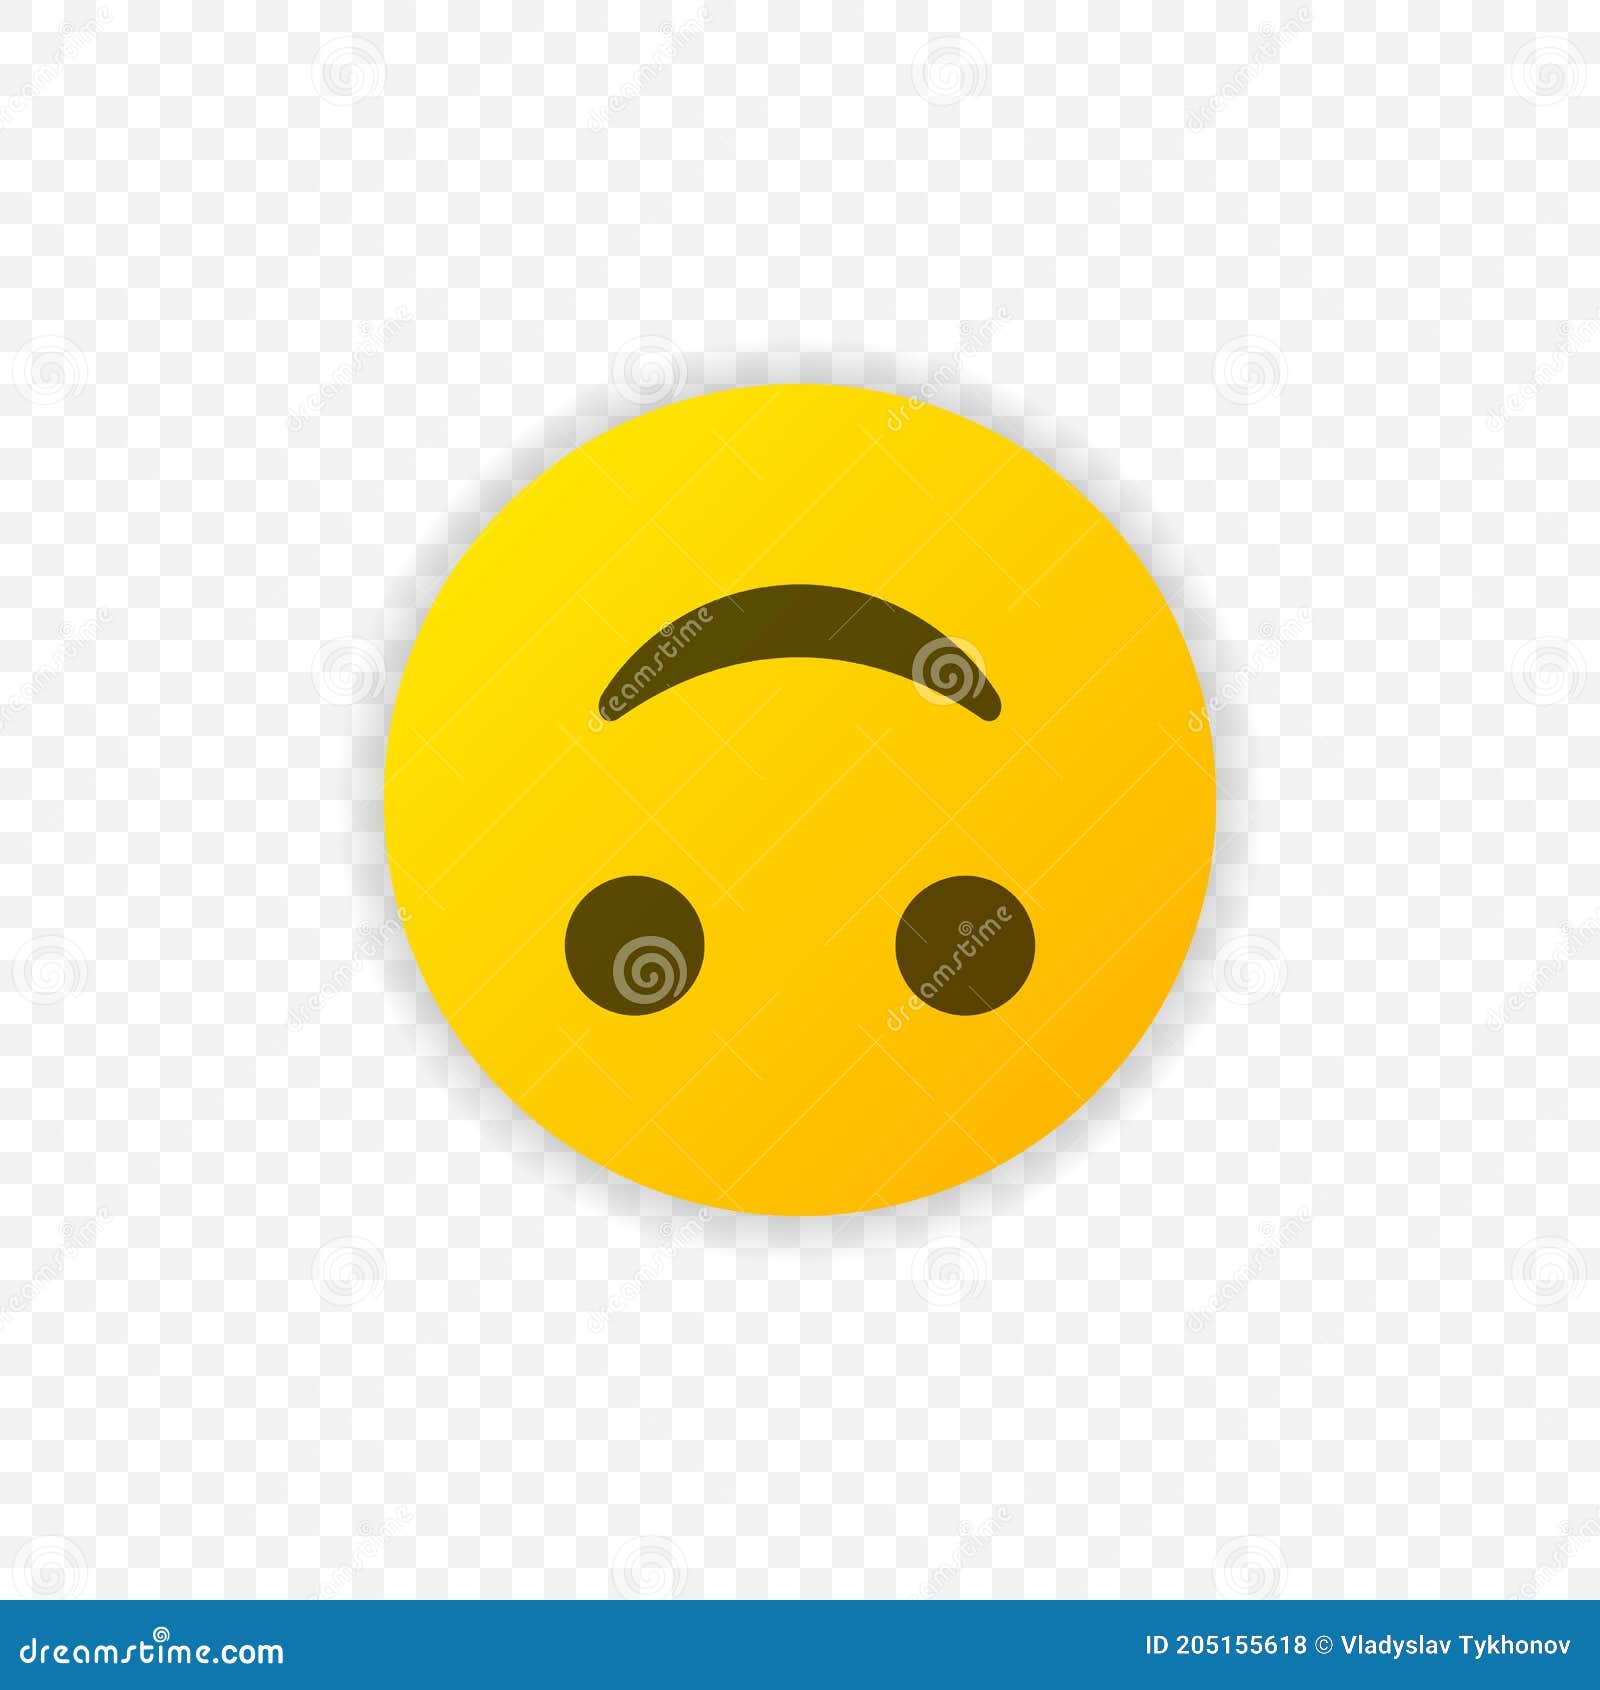 Inverted Smile Emoticon Vector Icon. Positive Smiling Emoji Symbol ...